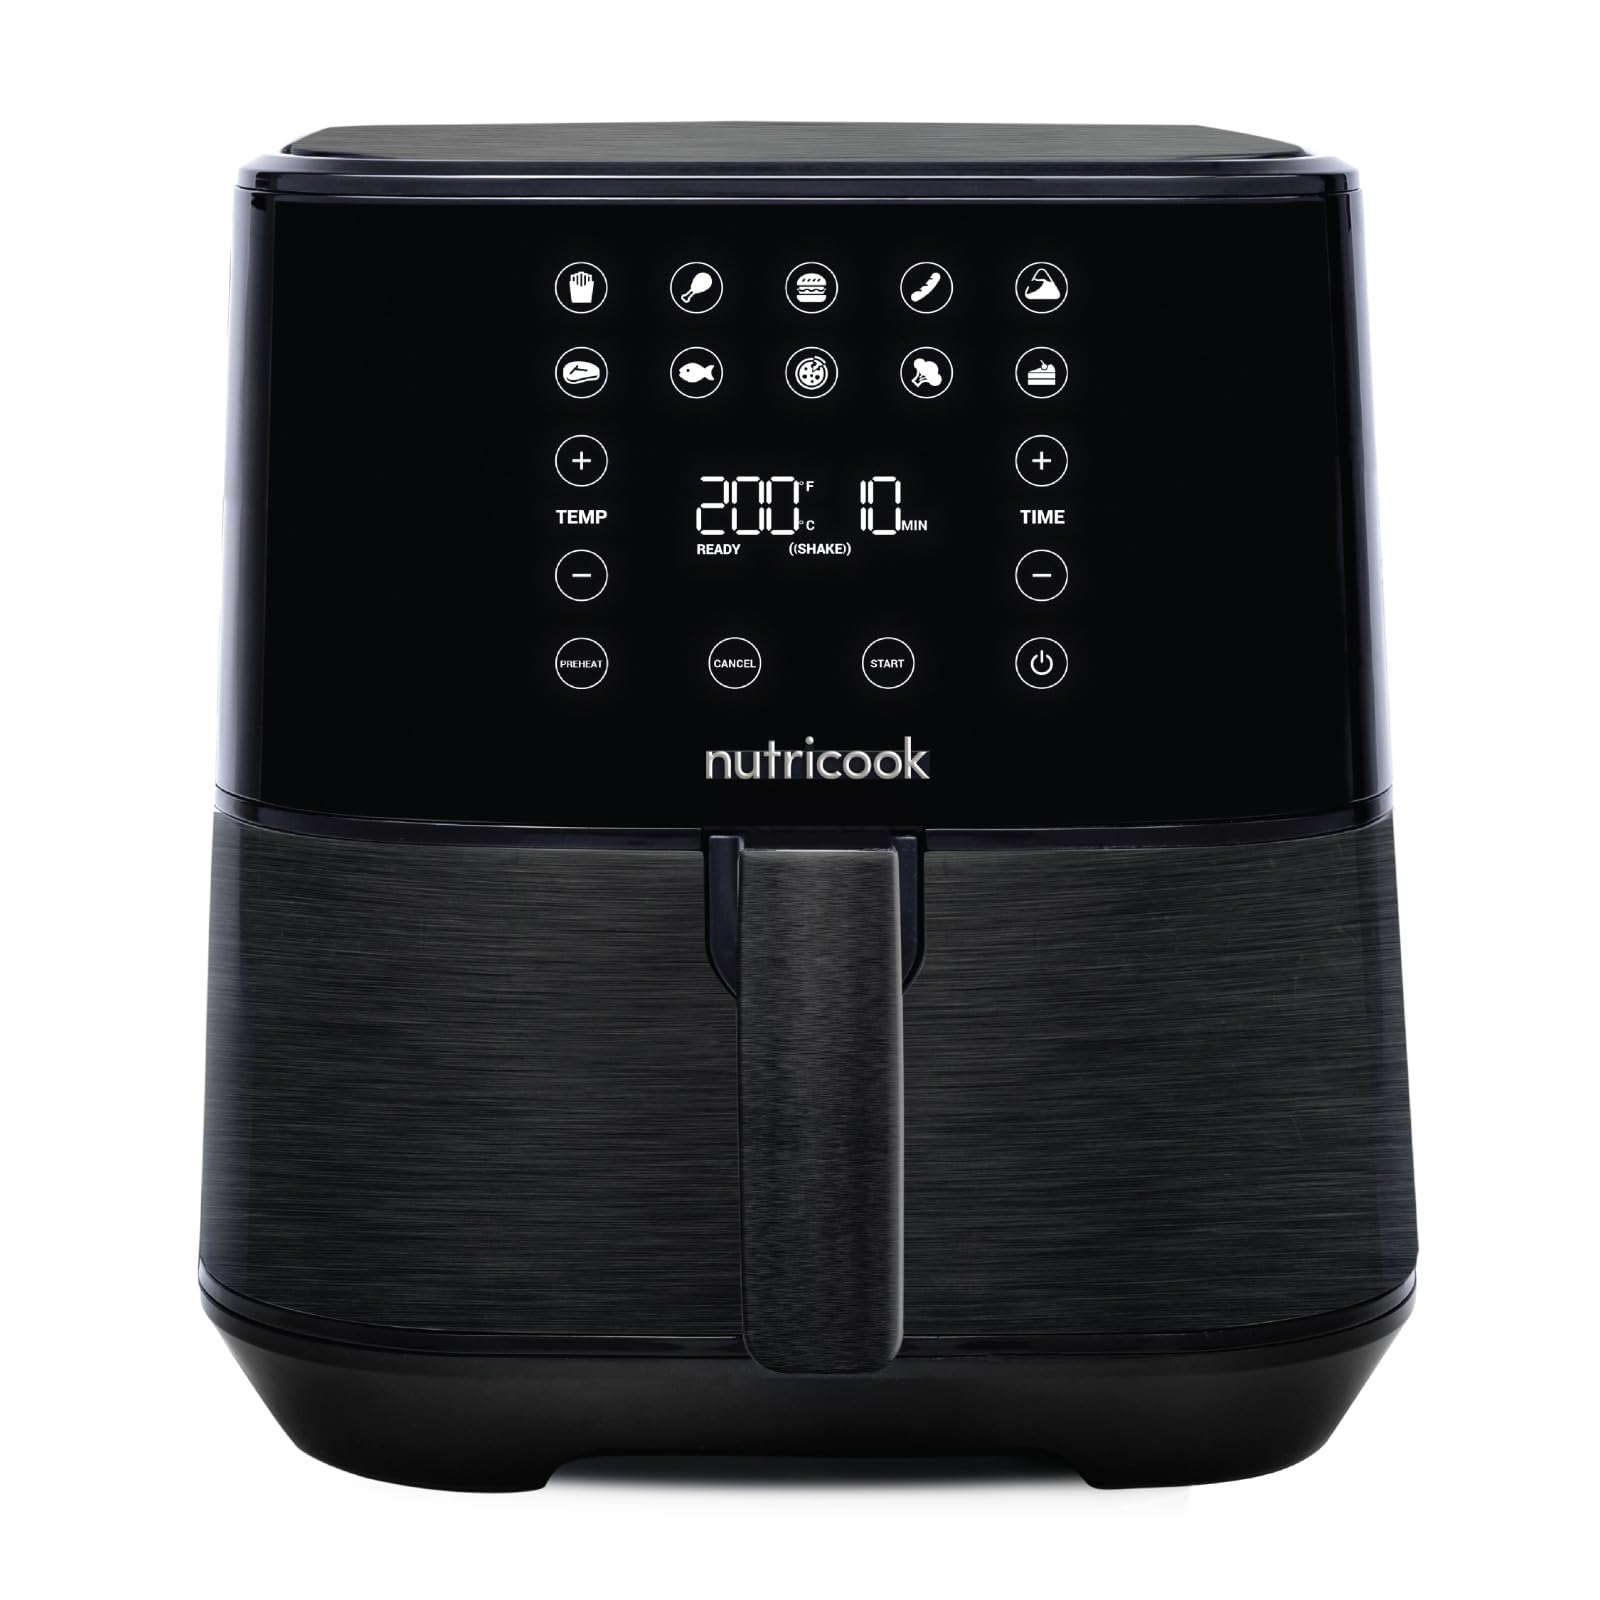 Nutricook Air Fryer 2، 5.5 لیتری مشکی، 1700 وات، صفحه نمایش پنل کنترل دیجیتال، 10 برنامه از پیش تعیین شده با عملکرد پیش گرمایش داخلی + خردکن 650 میلی لیتری CRED، گارانتی 2 ساله، انحصاری آمازون